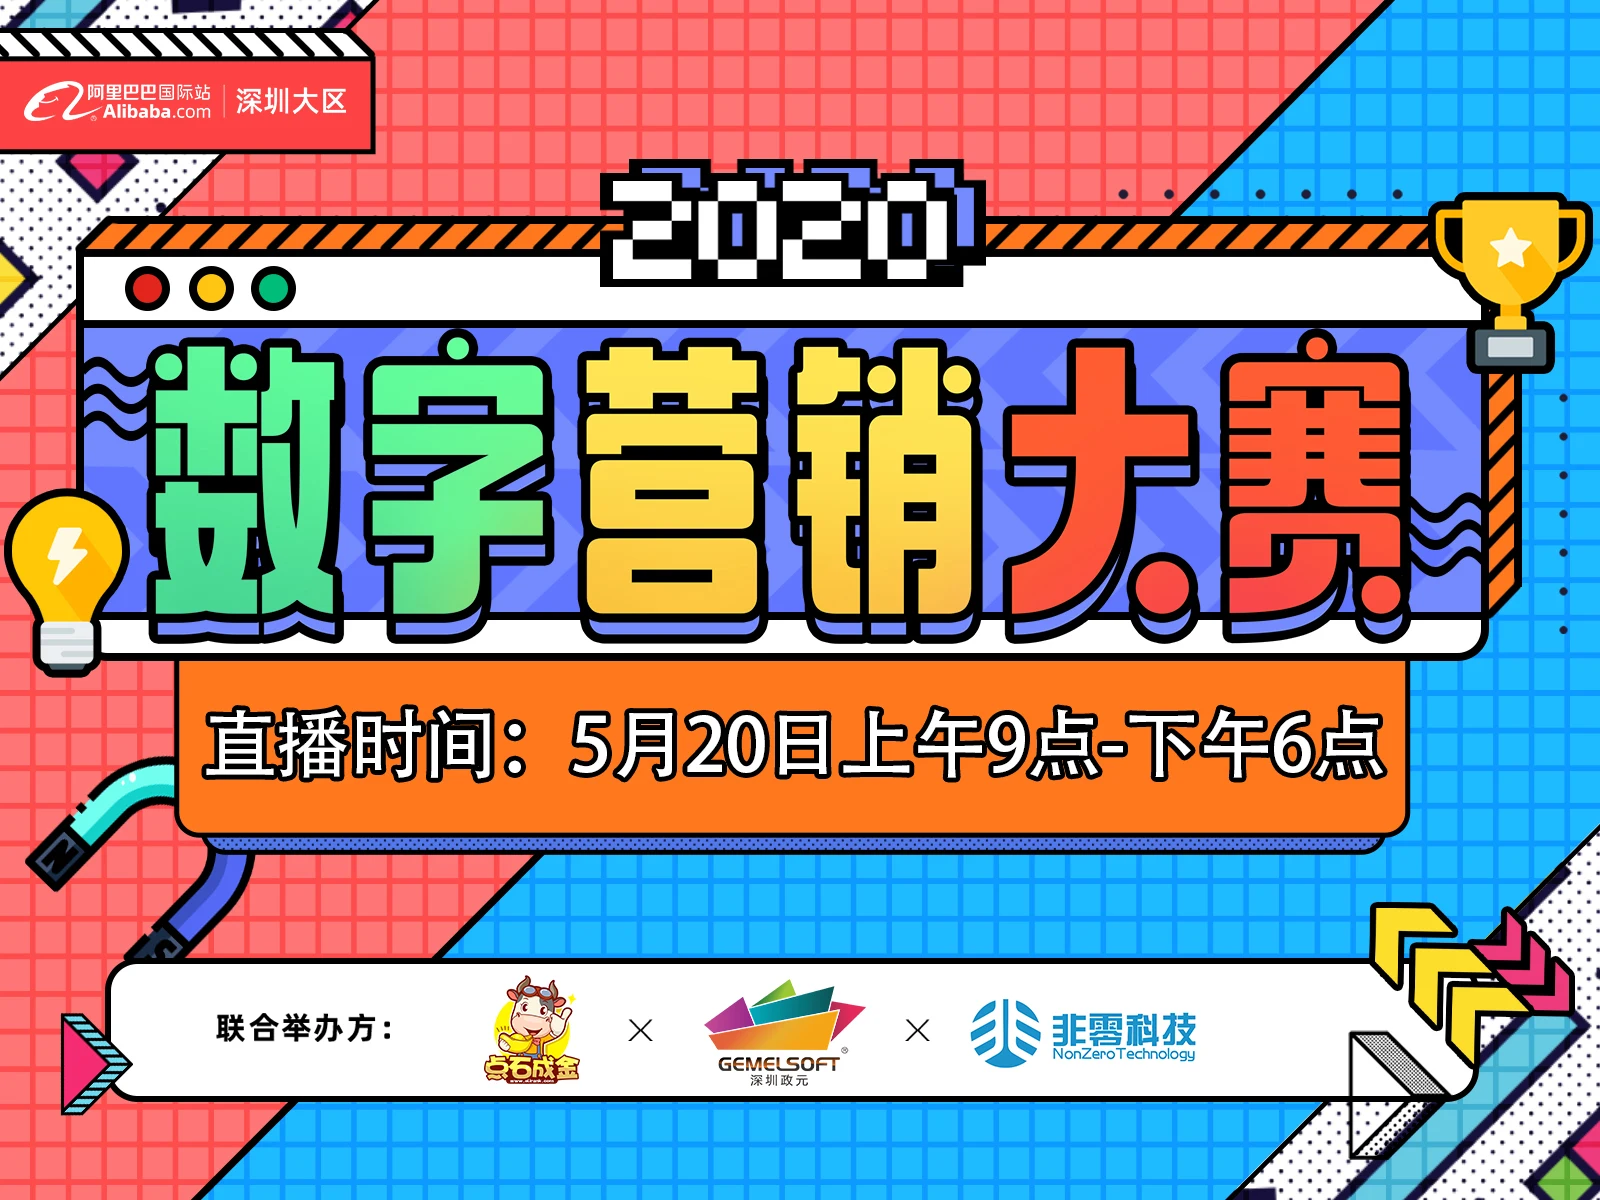 【2020数字营销大赛】深圳大区 深圳区域决赛